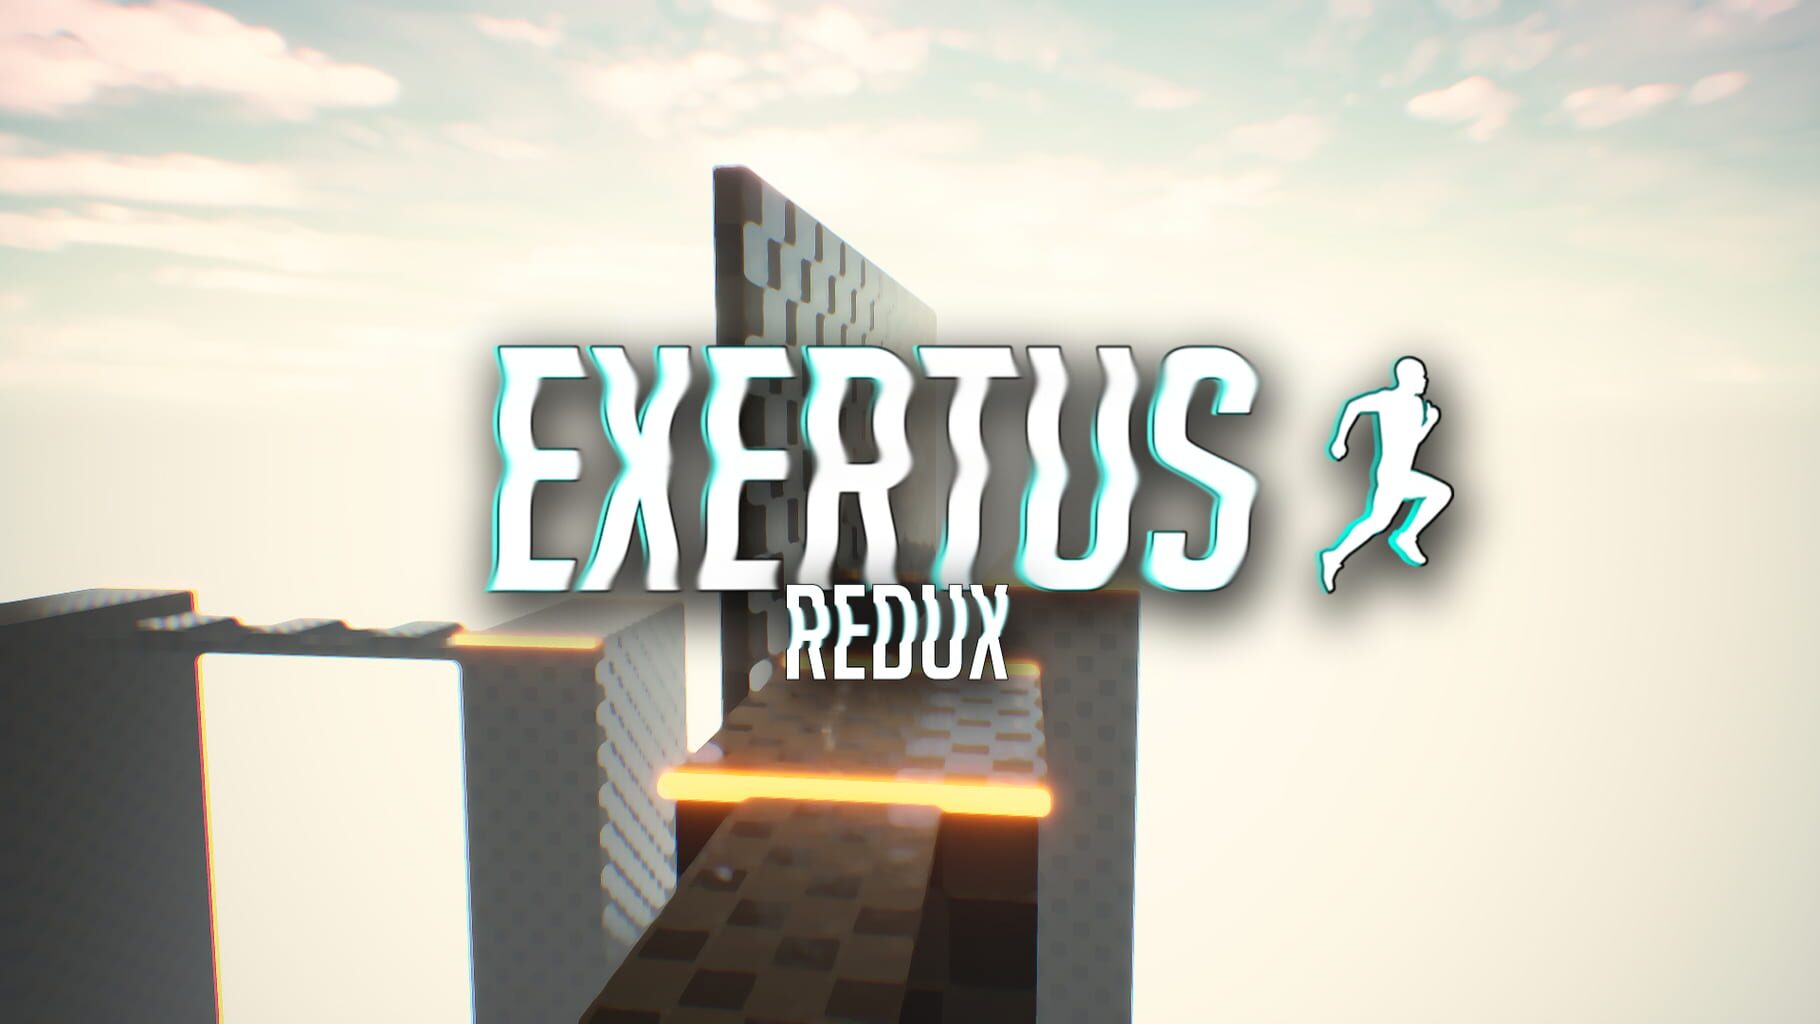 Exertus: Redux artwork